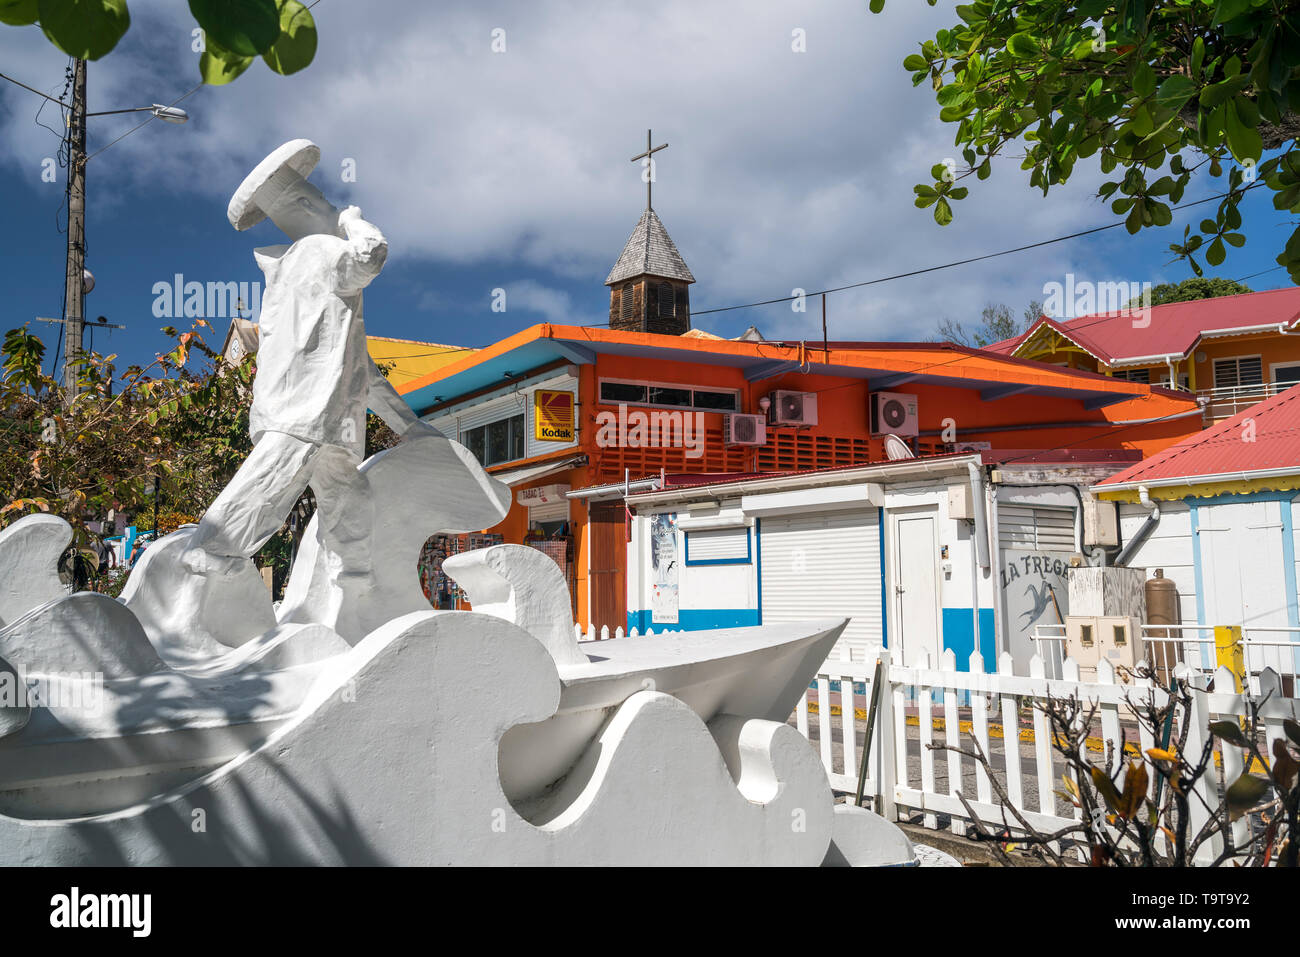 Denkmal auf dem Platz Place de la Mairie Kirche Notre-Dame de l'Assomption, Insel Terre-de-Haut, Les Saintes, Guadalupa, Karibik, Frankreich | Monu Foto Stock